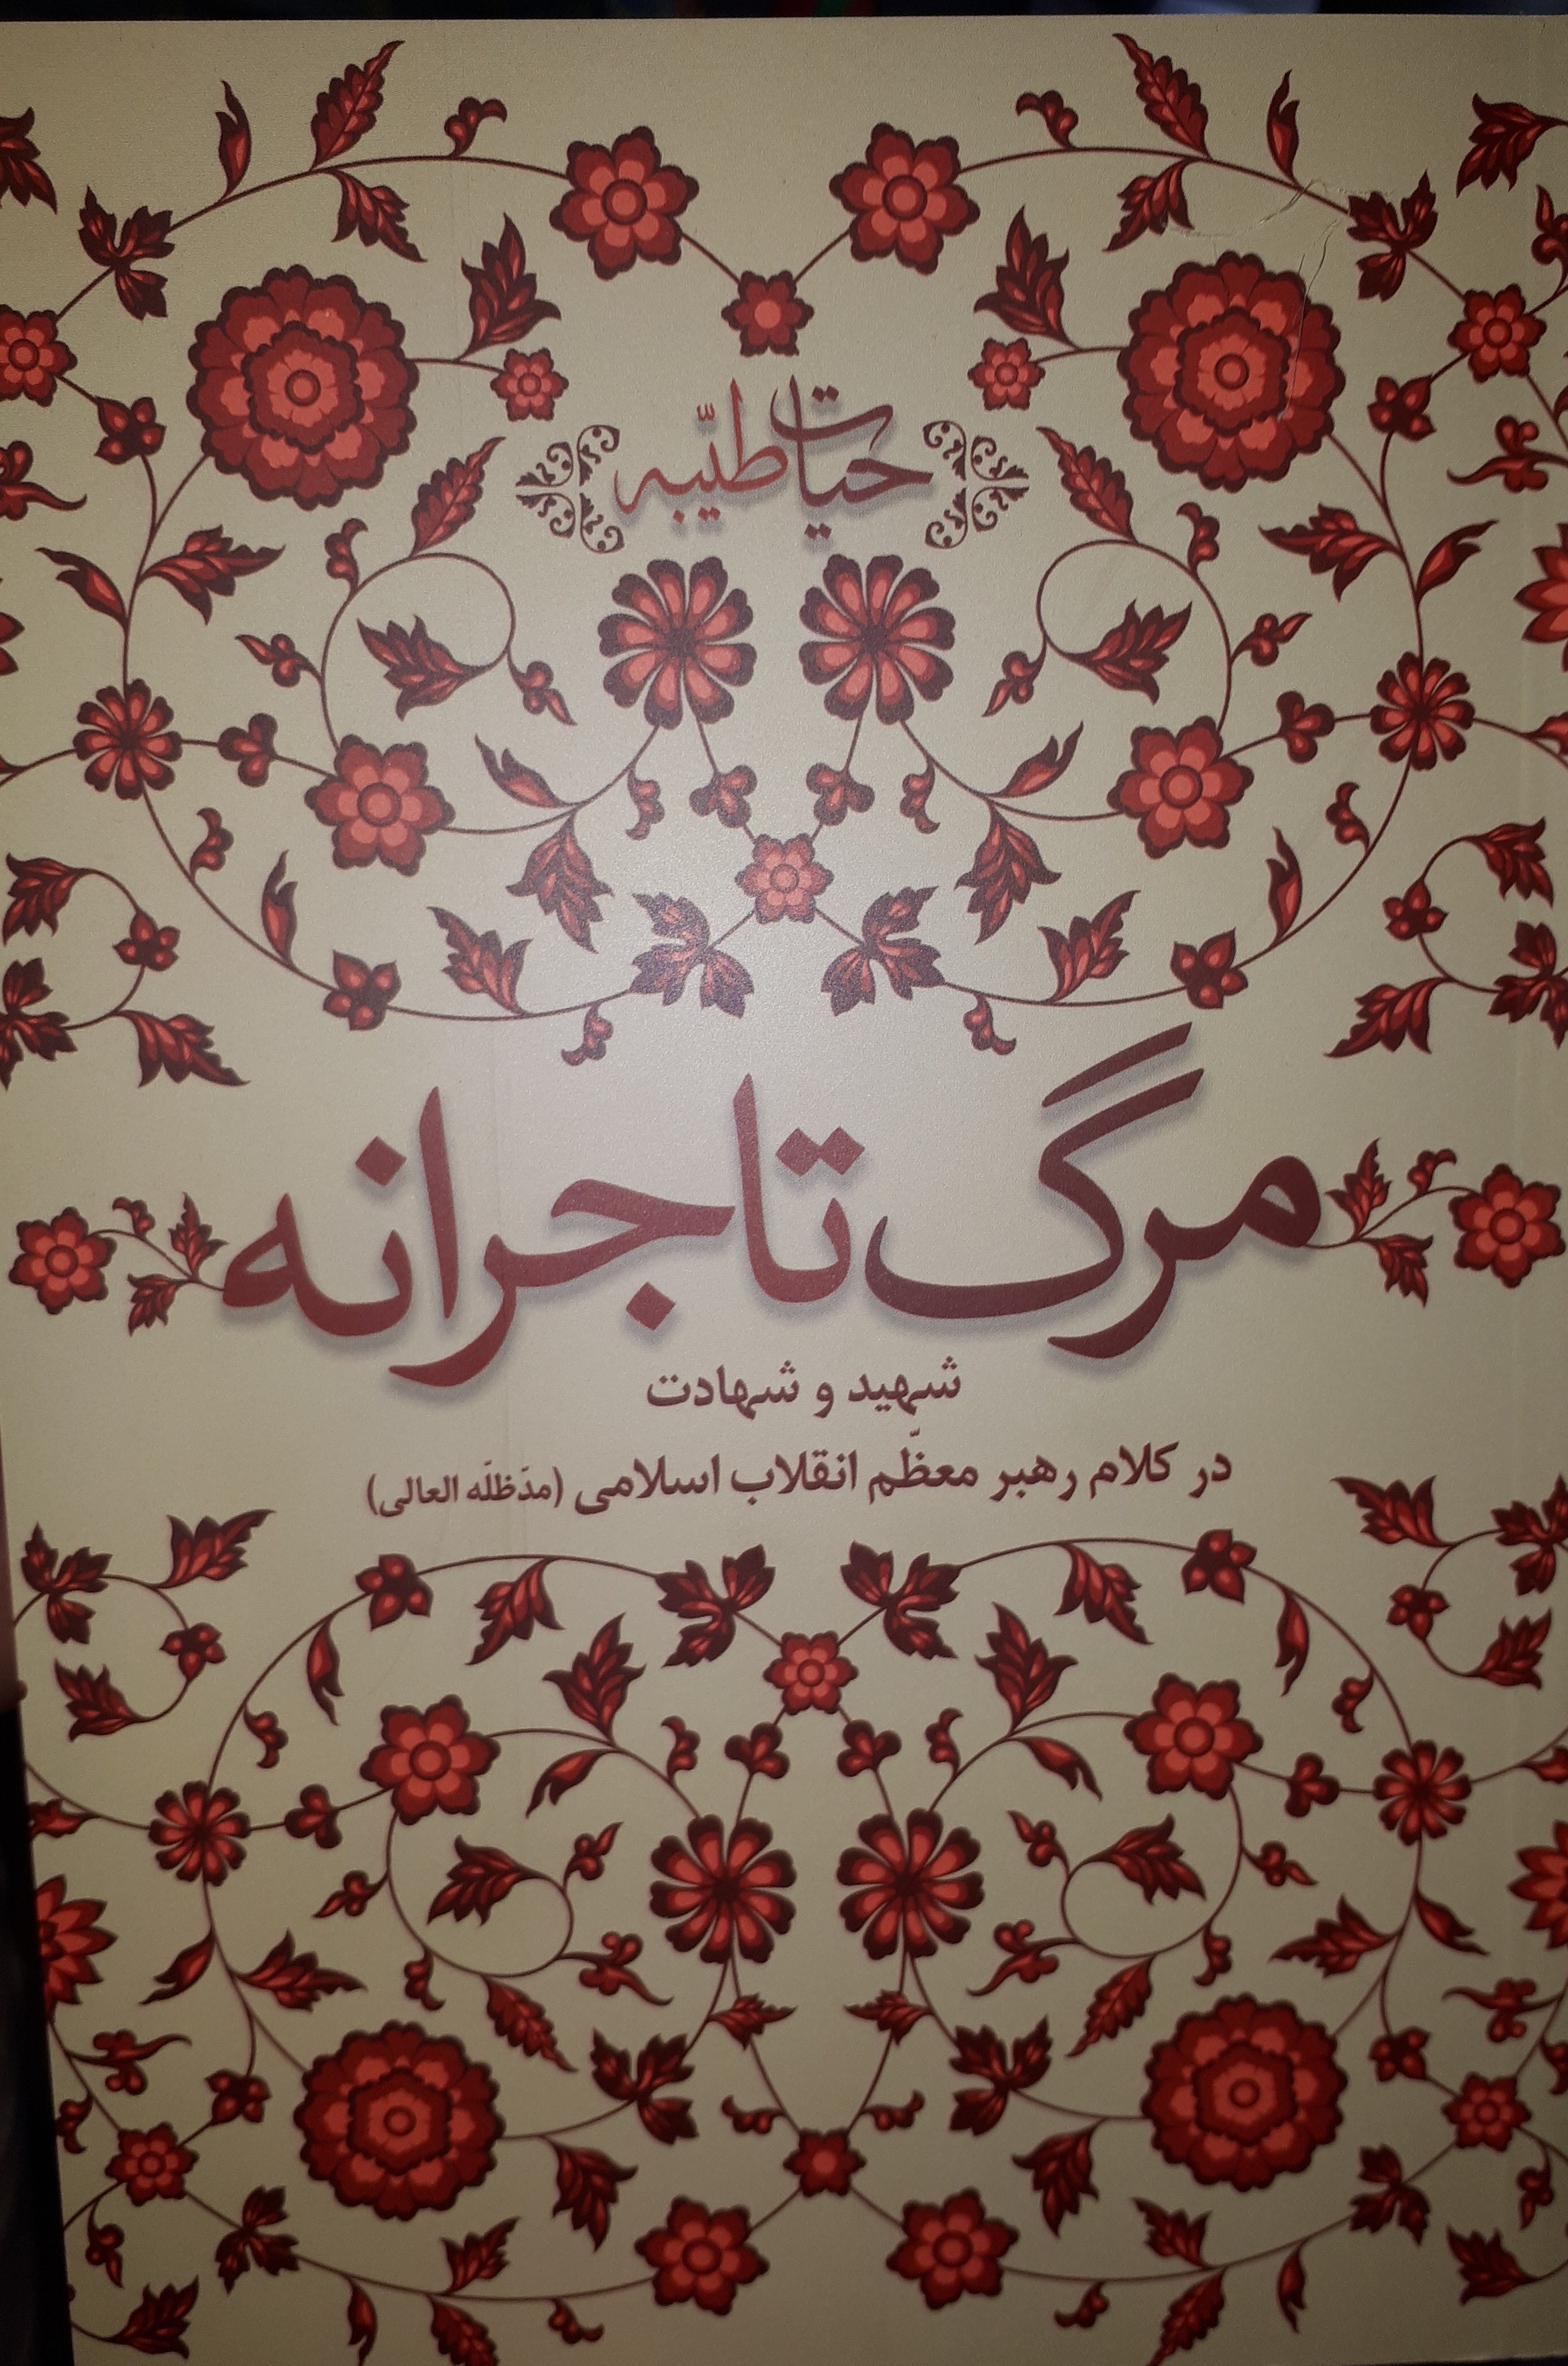 عرضۀ کتاب «مرگ تاجرانه» در غرفۀ انتشارات انقلاب اسلامی